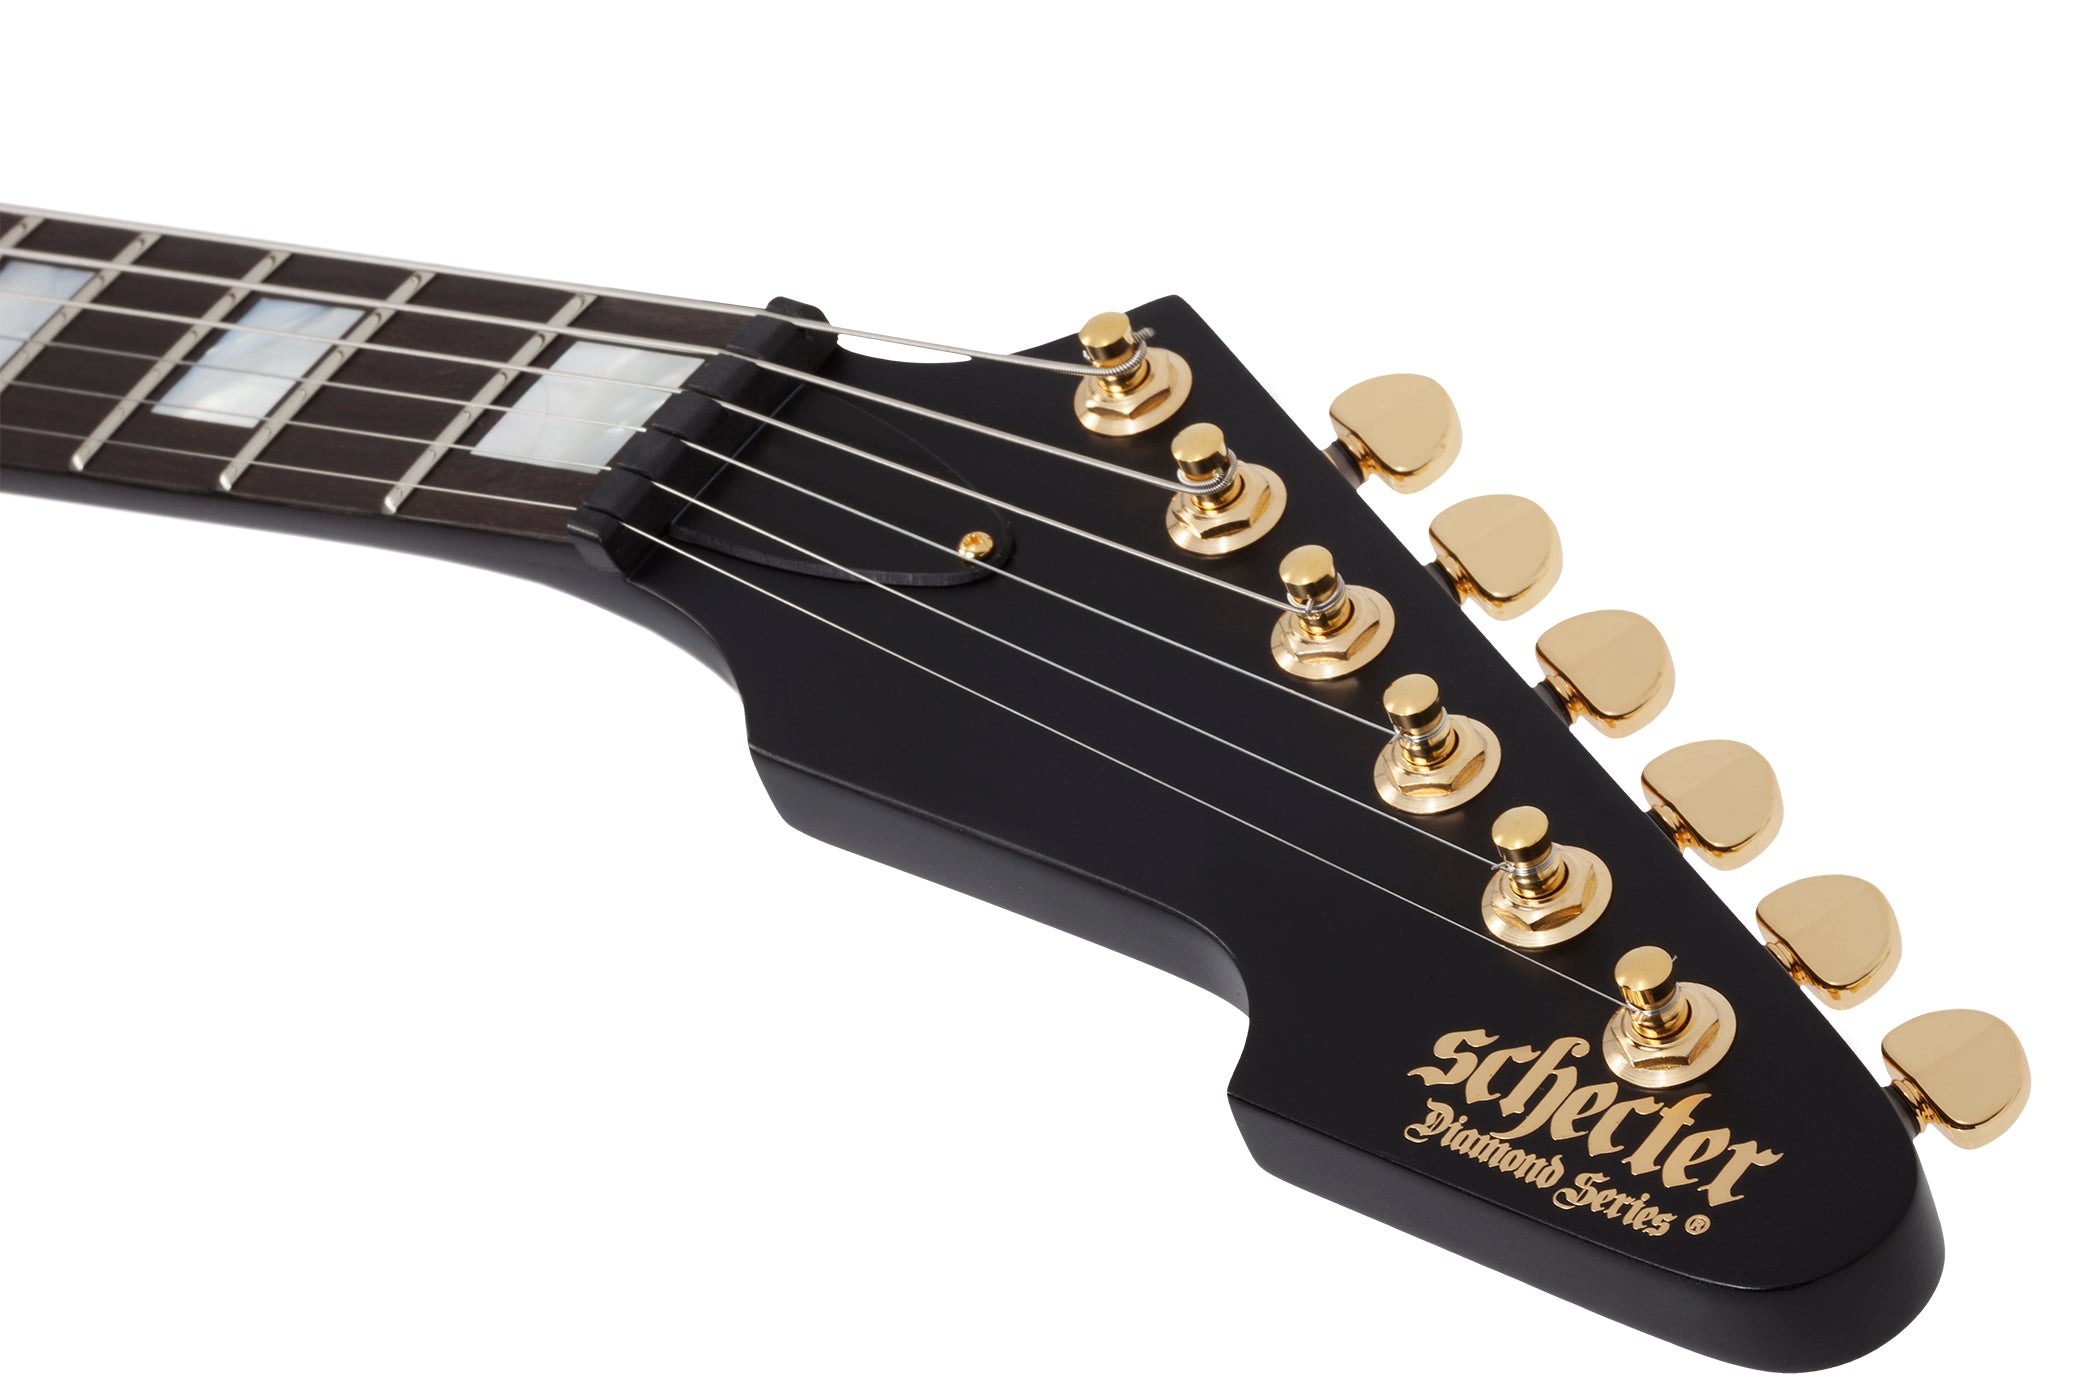 Schecter Cesar Soto E-1 Signature Electric Guitar Satin Black 369-SHC